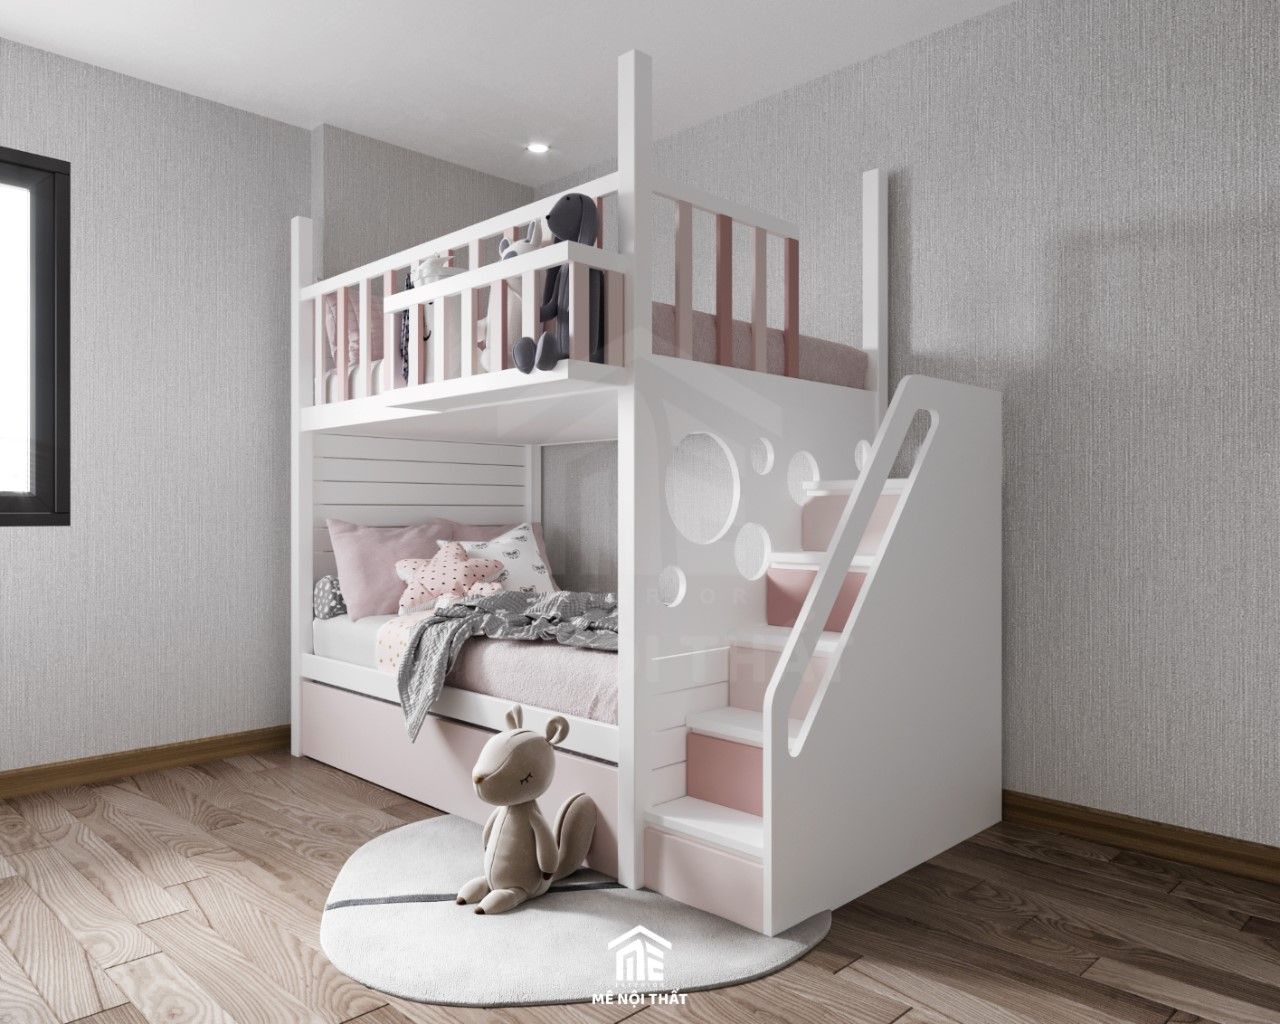 Phòng ngủ bé sử dụng giấy dán tường màu xám bố trí nội thất đầy đủ với giường tầng tông màu hồng